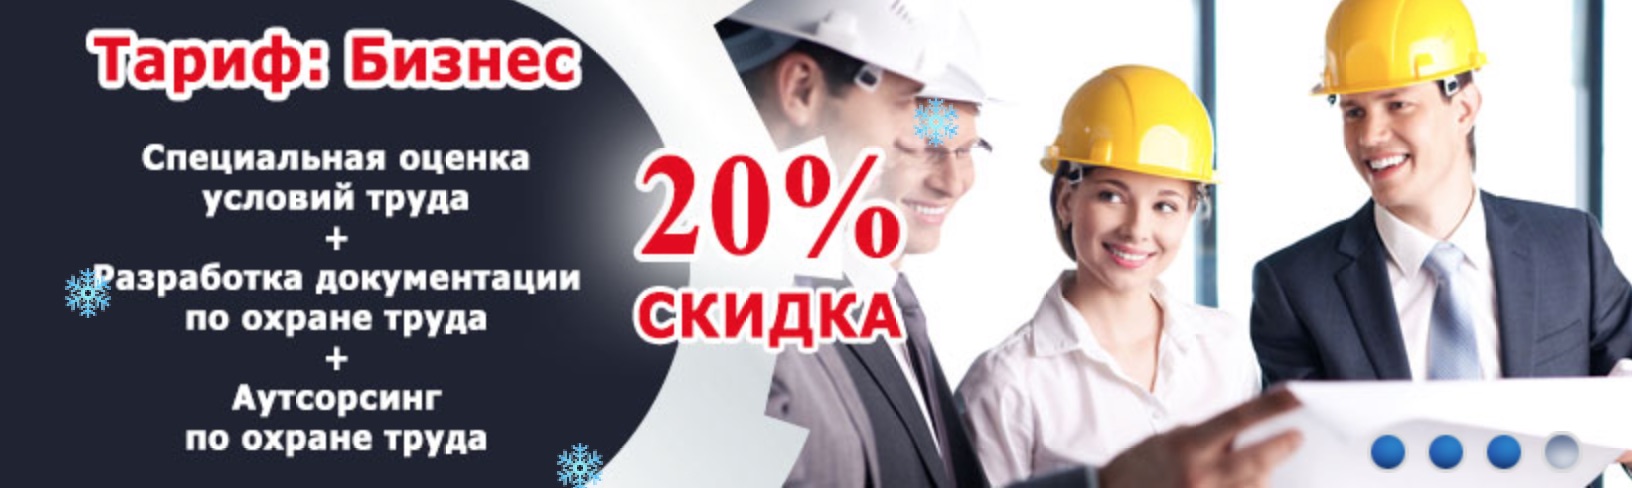 Специальная оценка условий труда в Московской области